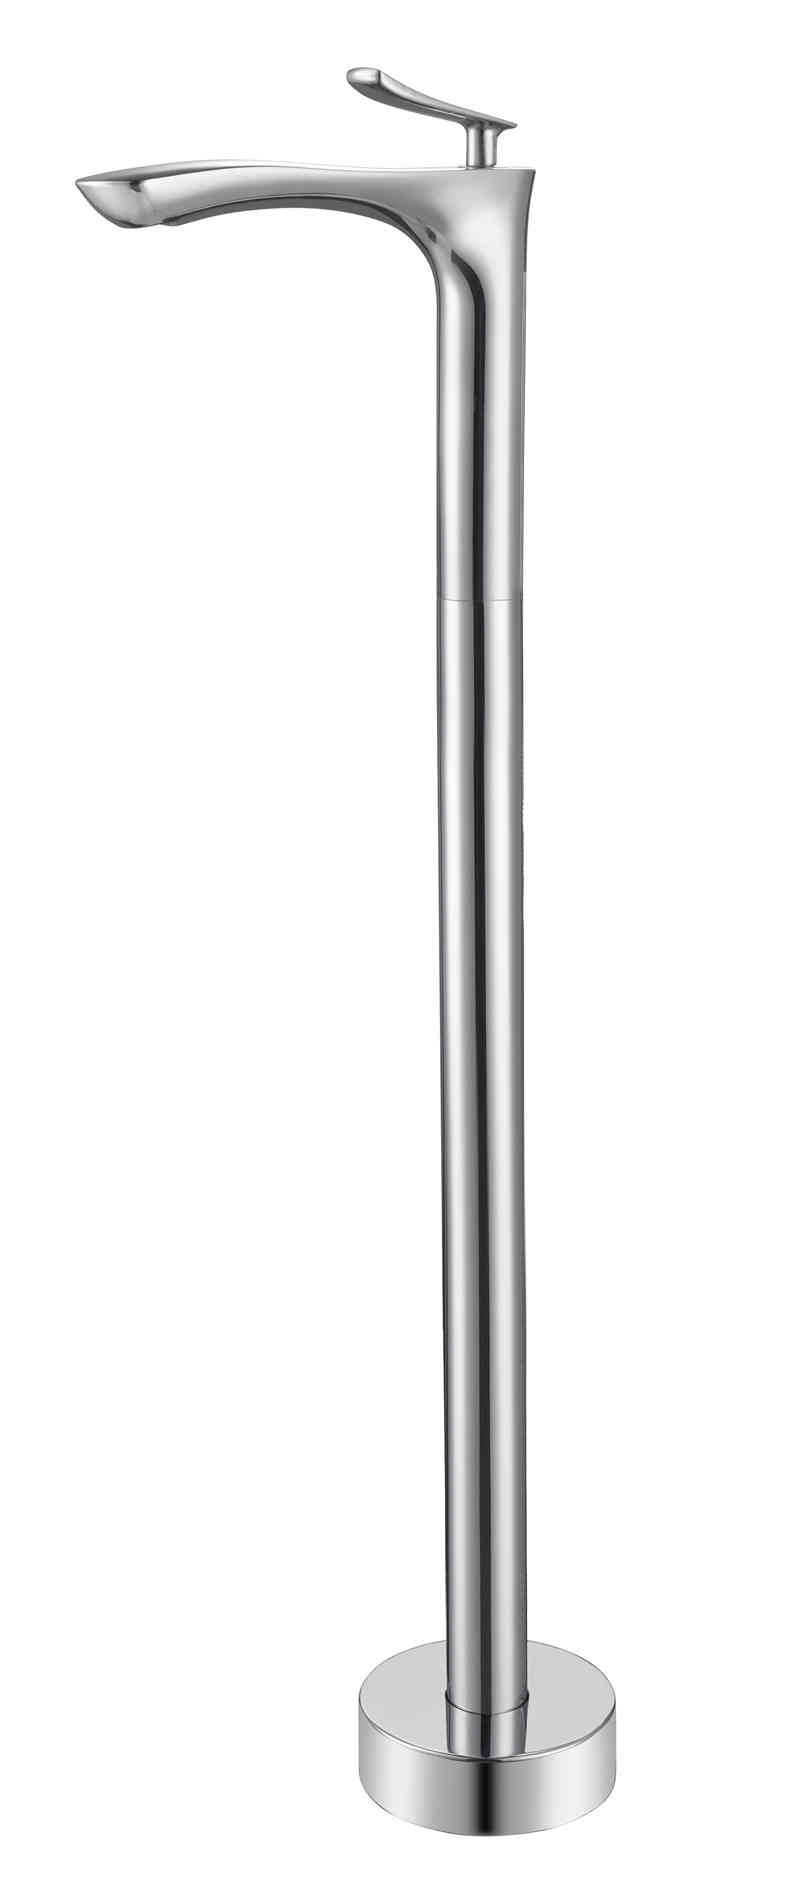 Floor Standing Faucet Mixer for Freestanding Bathtub Basin DF-02047-2